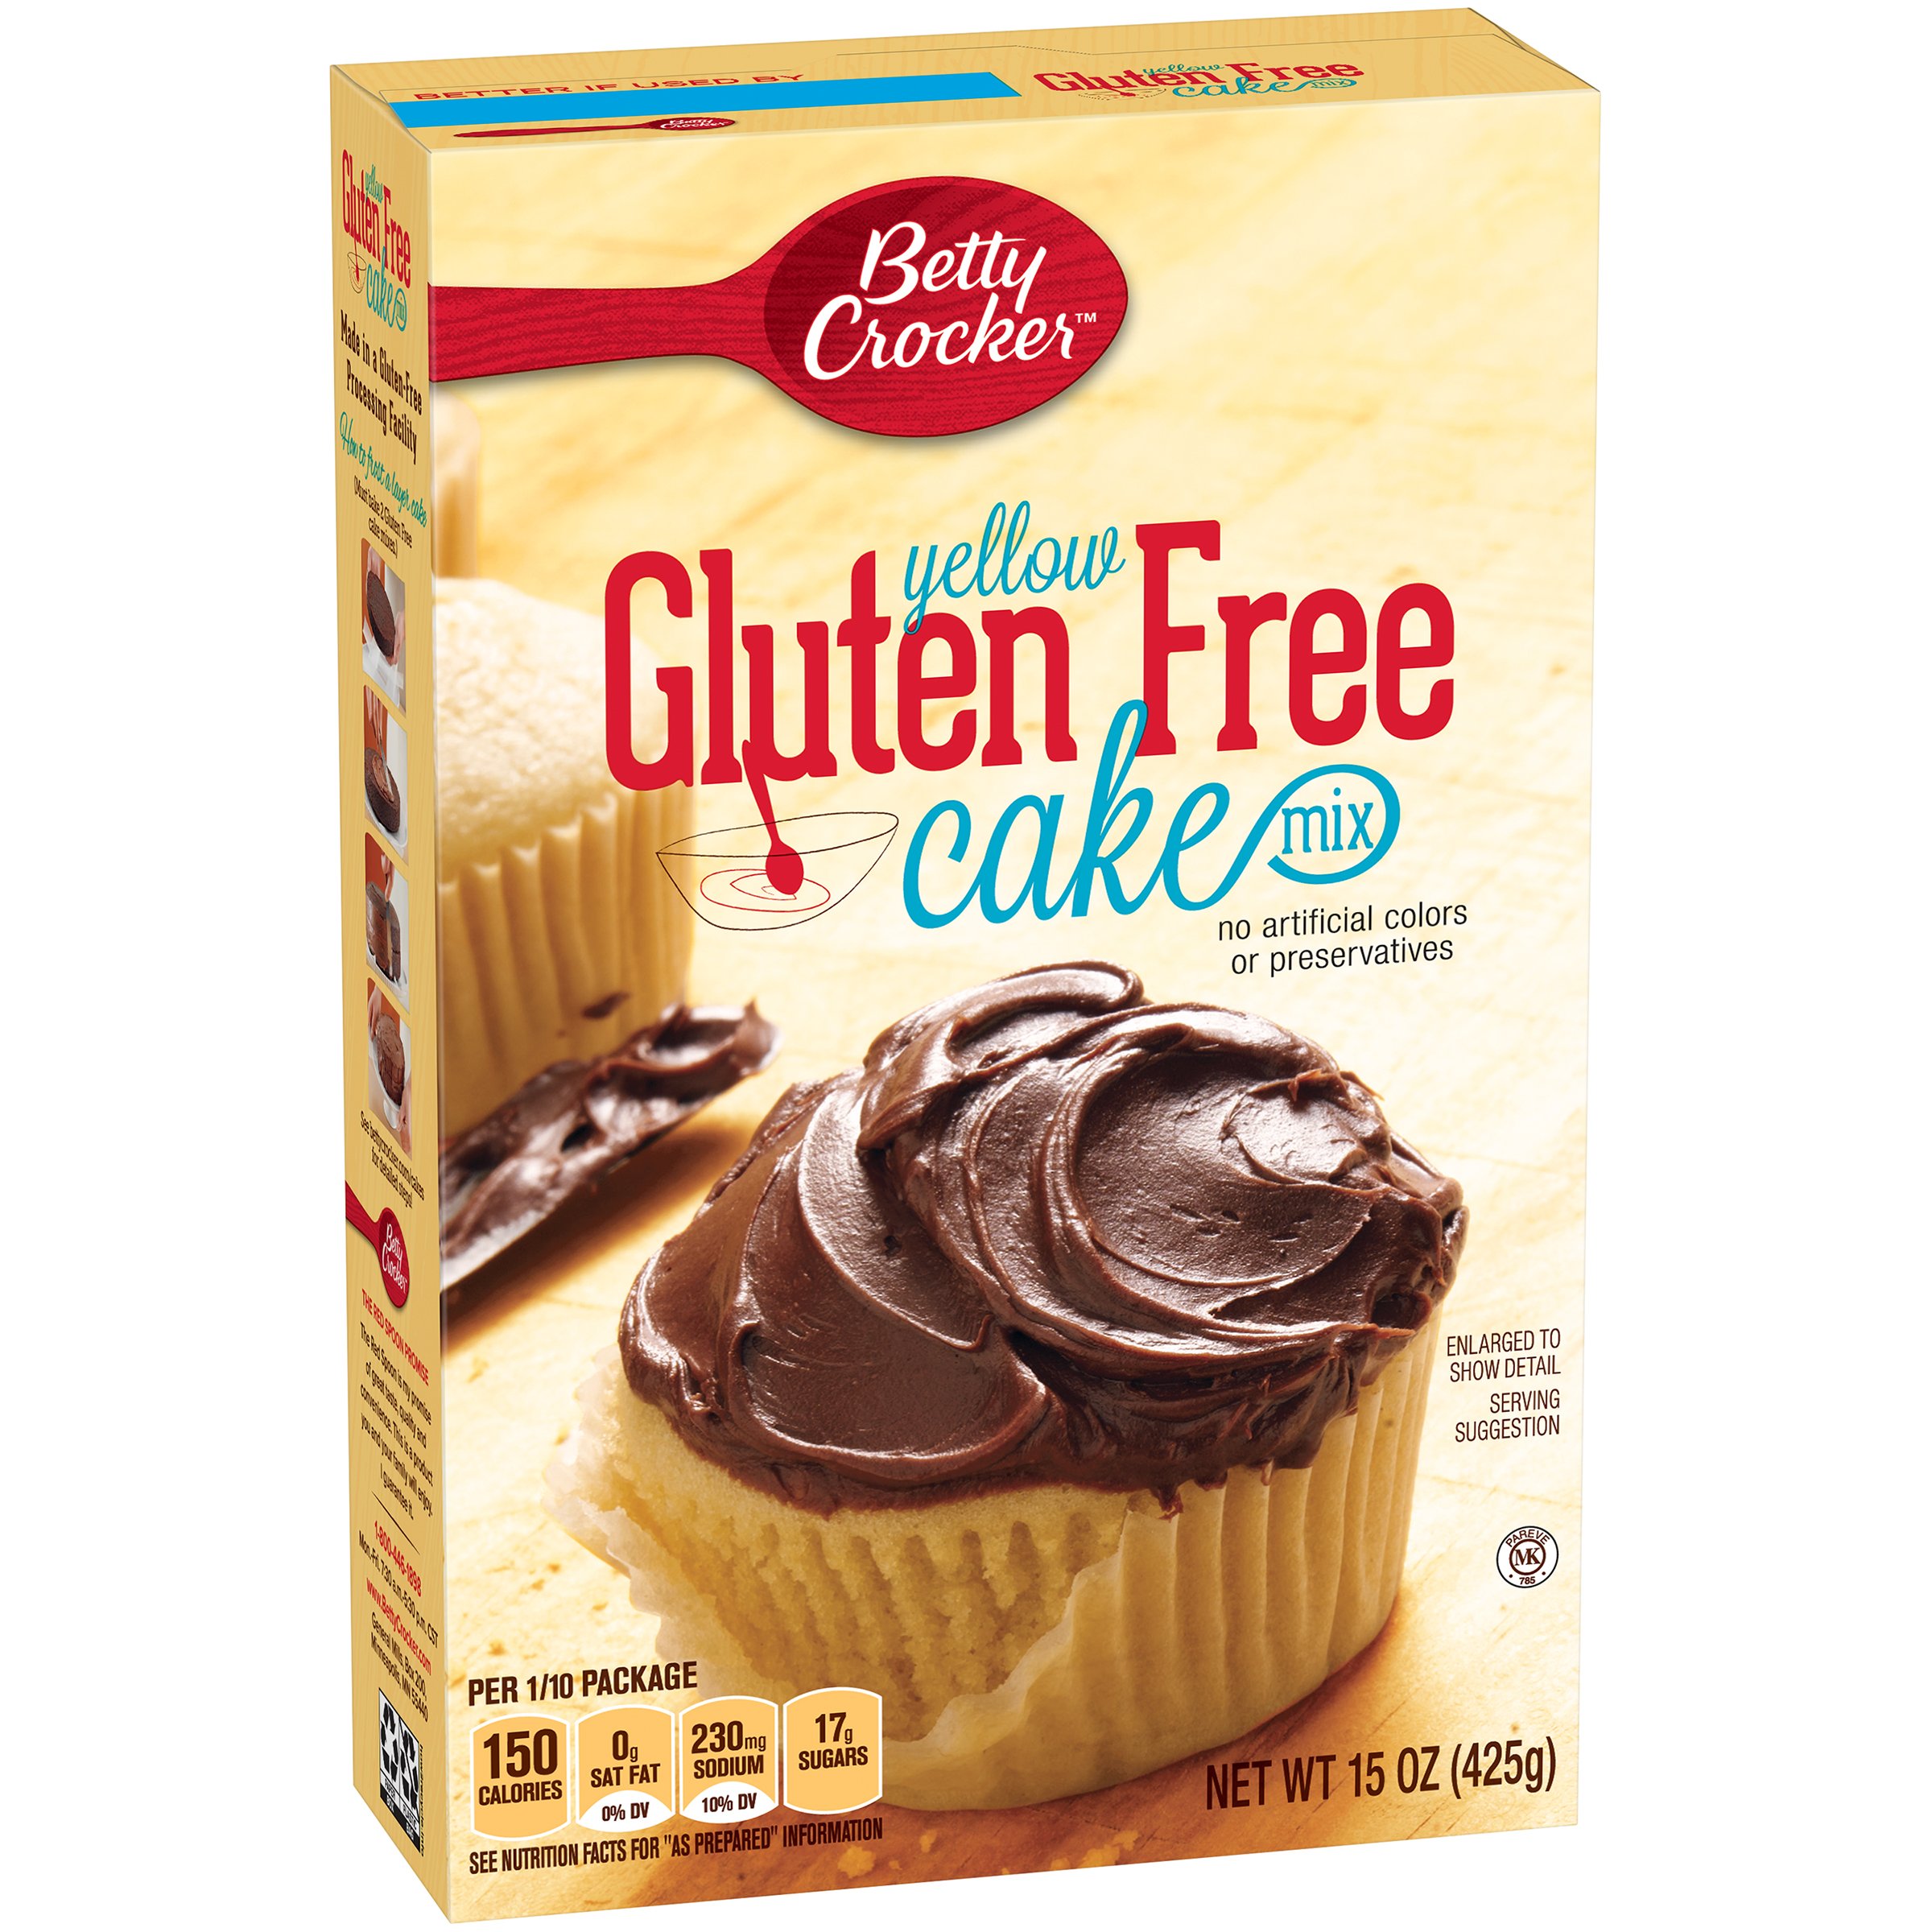 Betty Crocker Gluten Free Yellow Cake Mix, 15 oz. Box